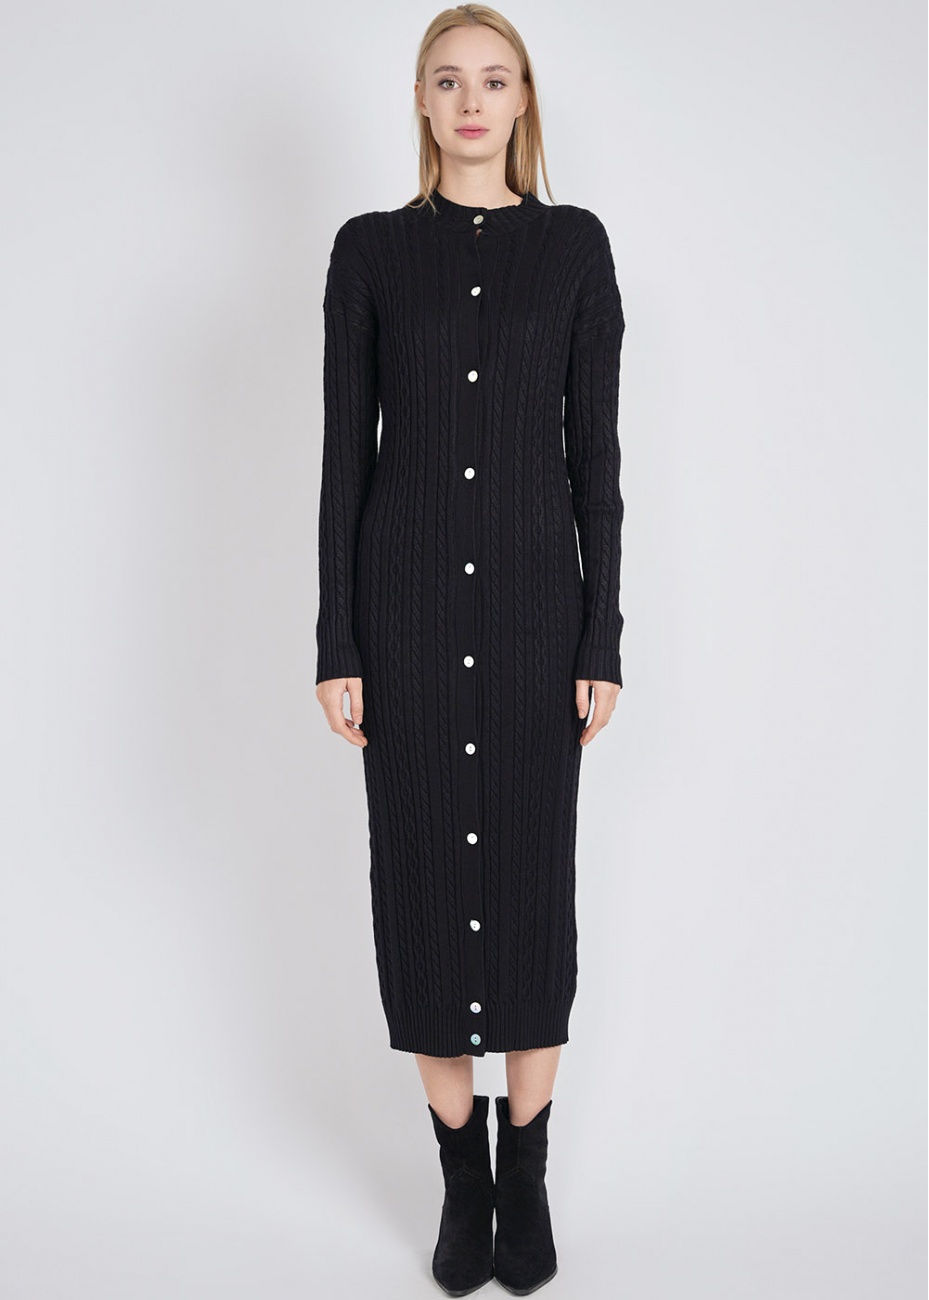 Black Dress Delight: Cable Knit Texture & Buttons | Modest Women ...